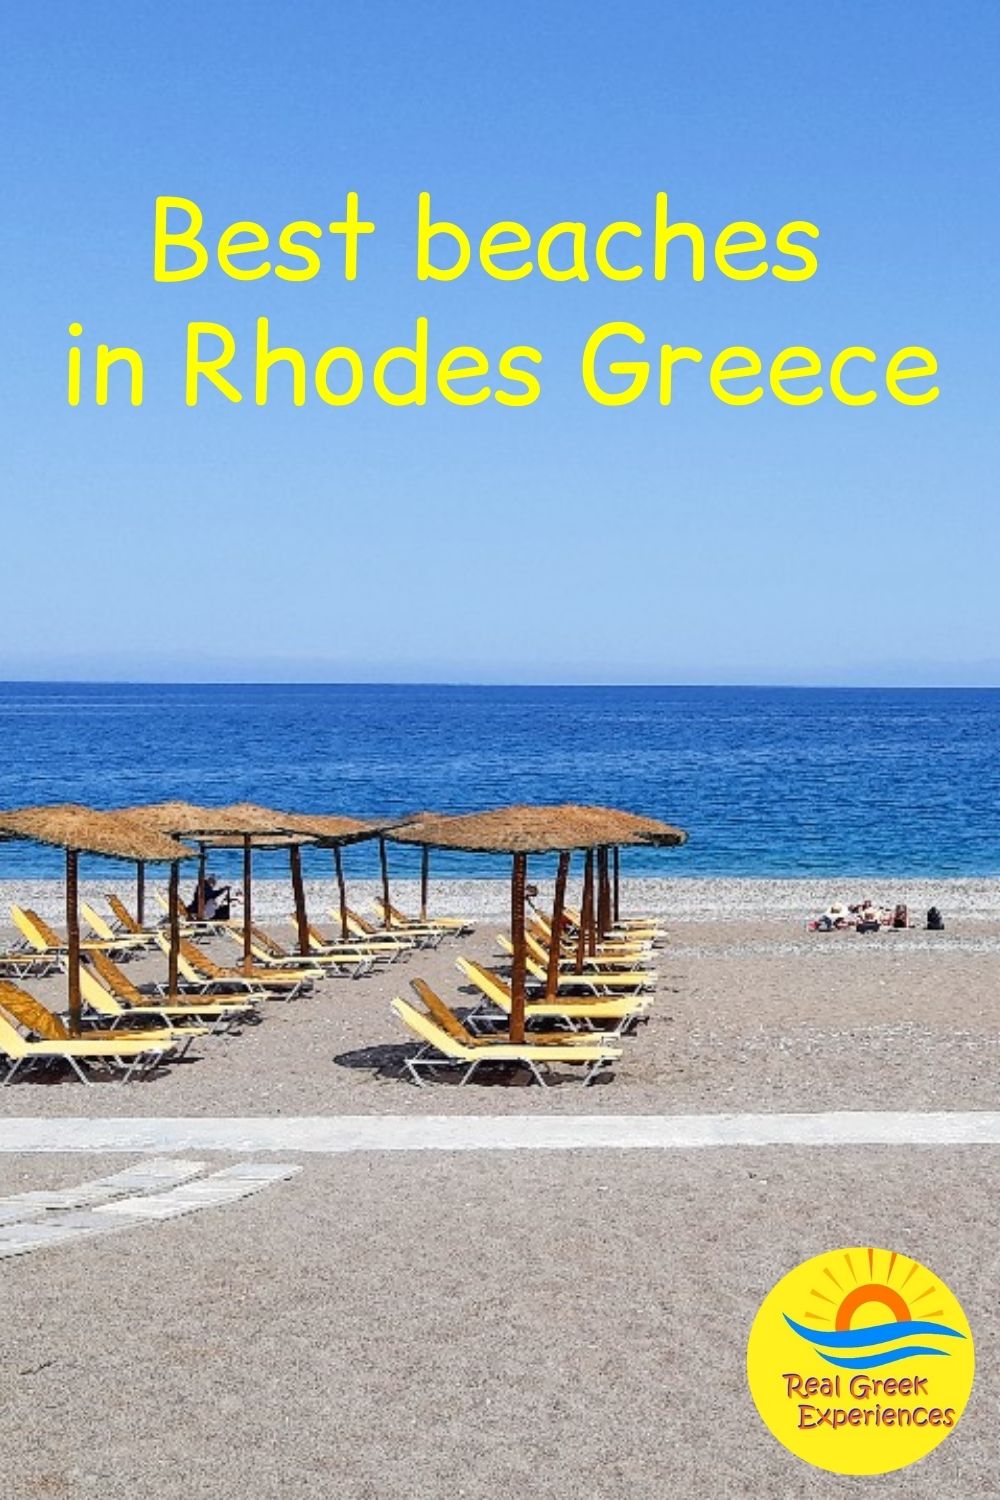 Best beaches in Rhodes Greece